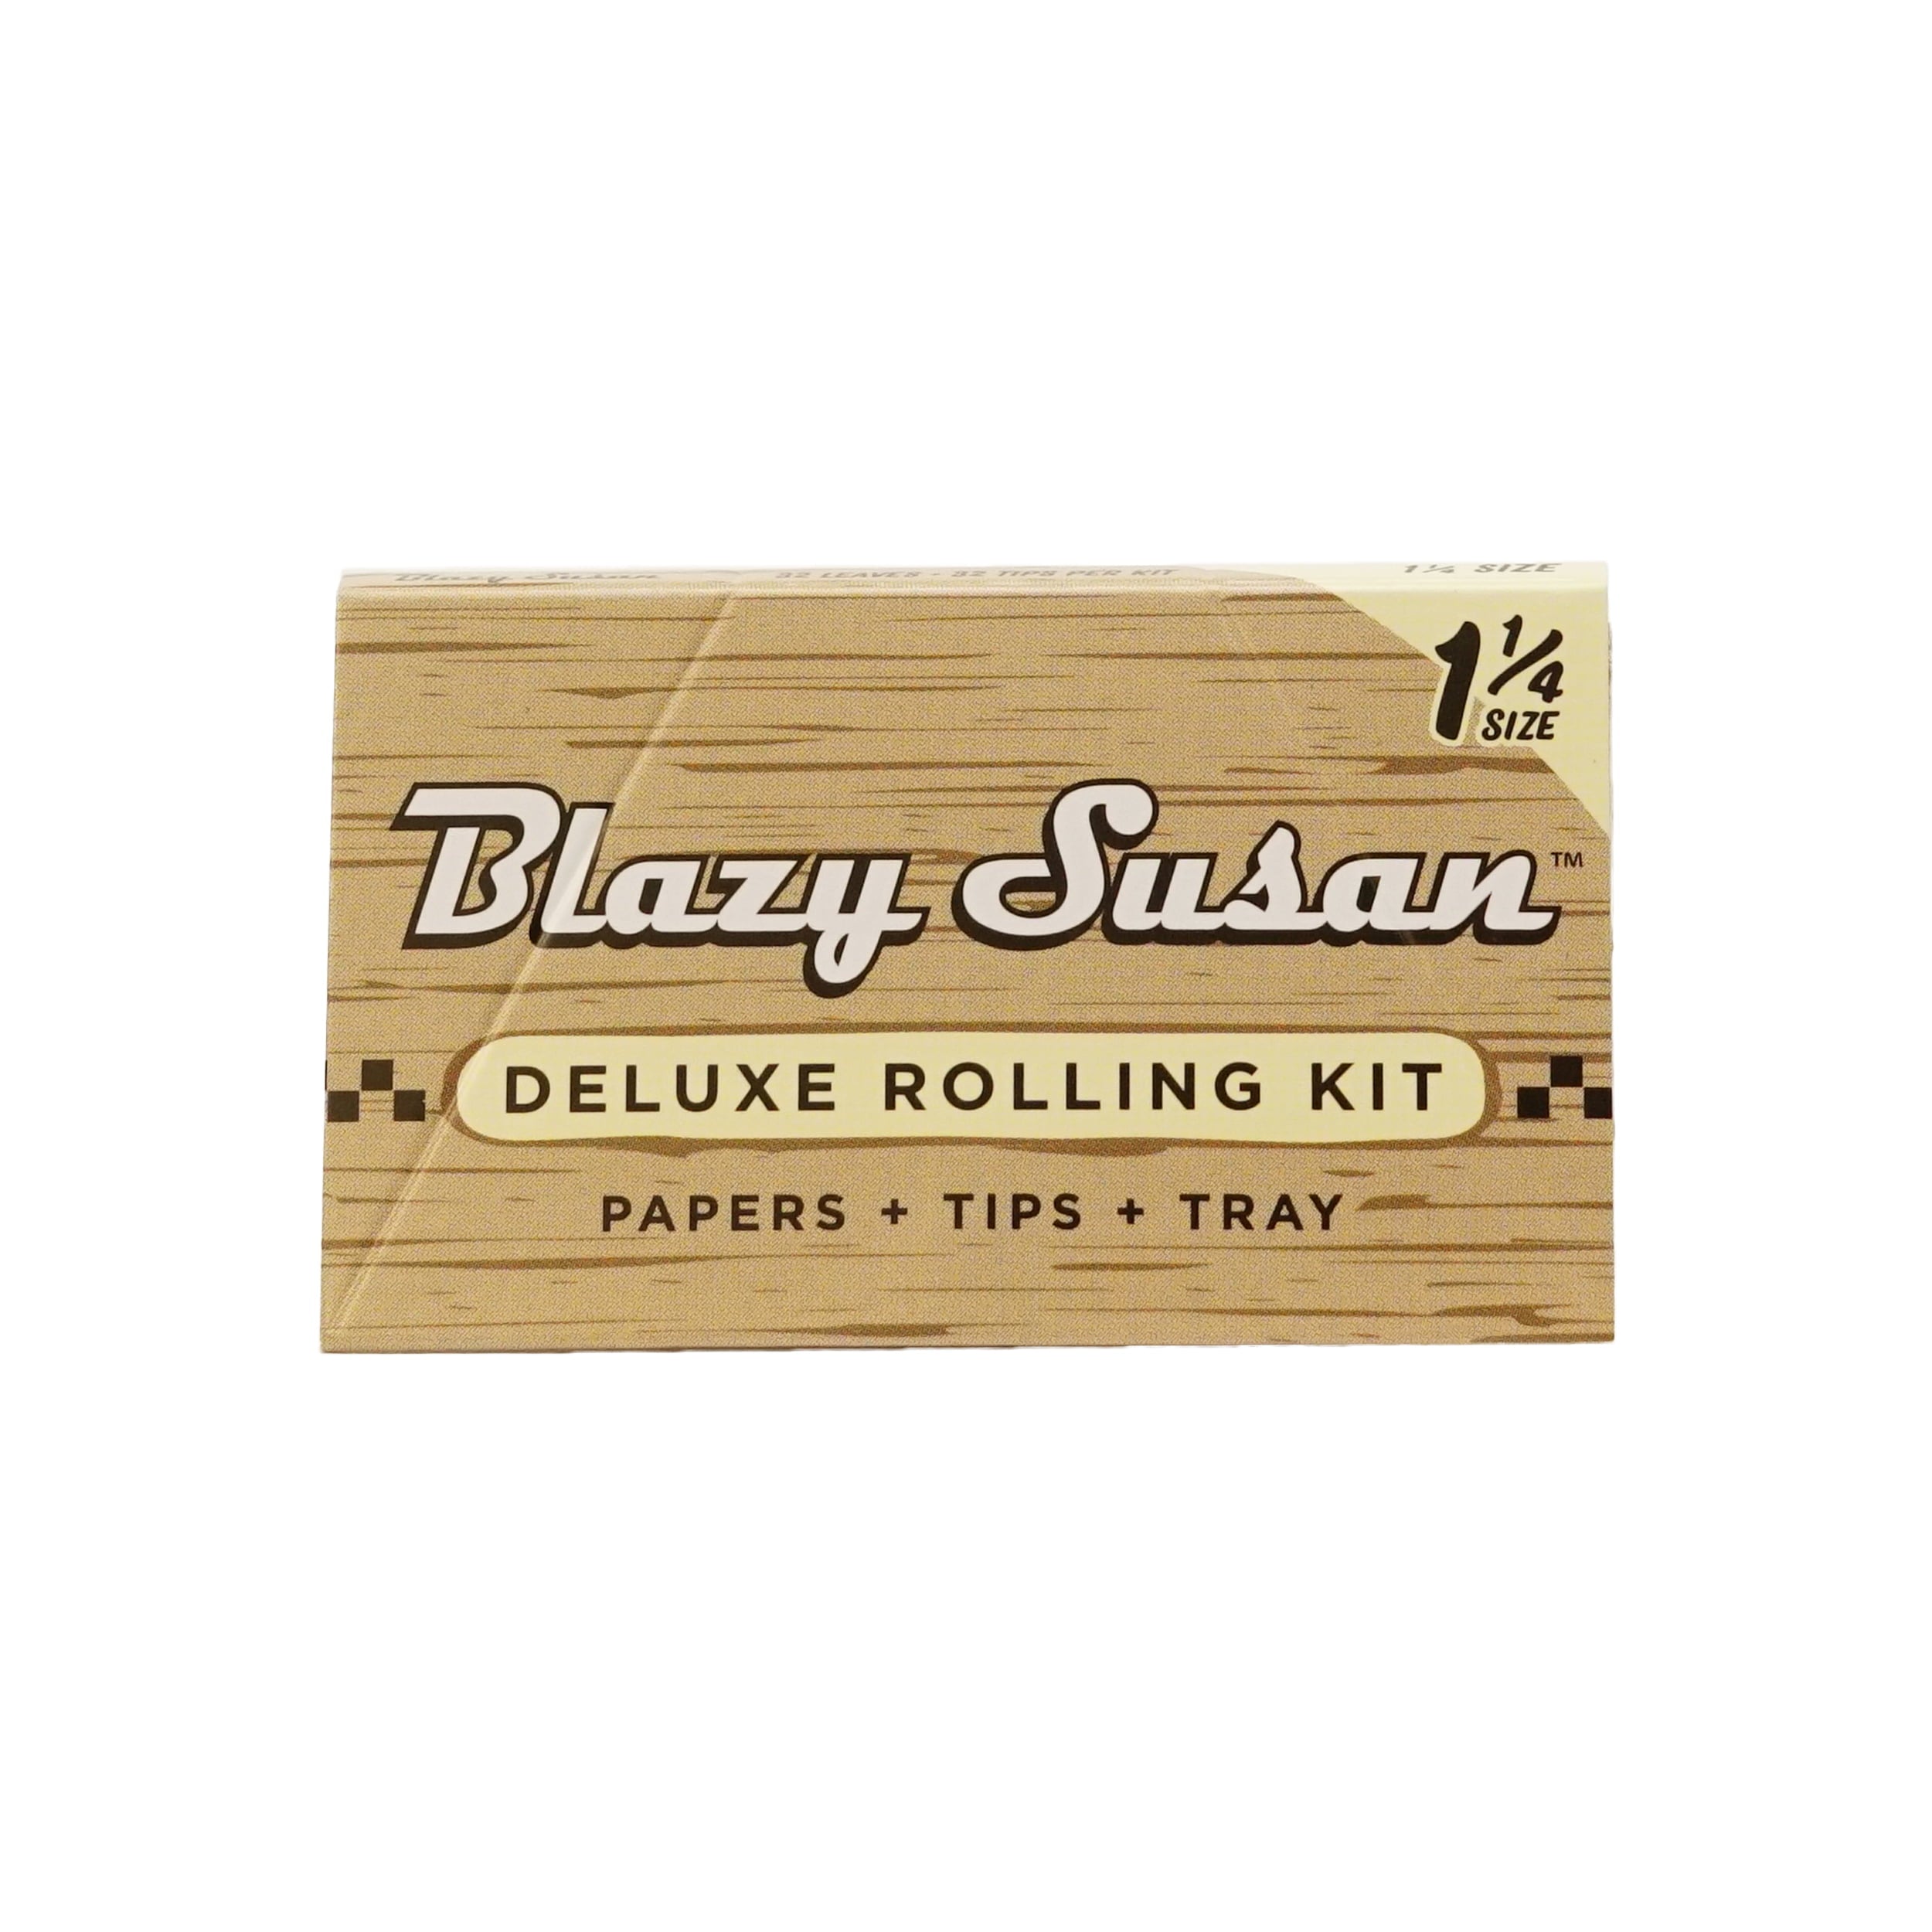 Paquete de Papel Sin Blanquear 1-1/4 con filtro Blazy Susan